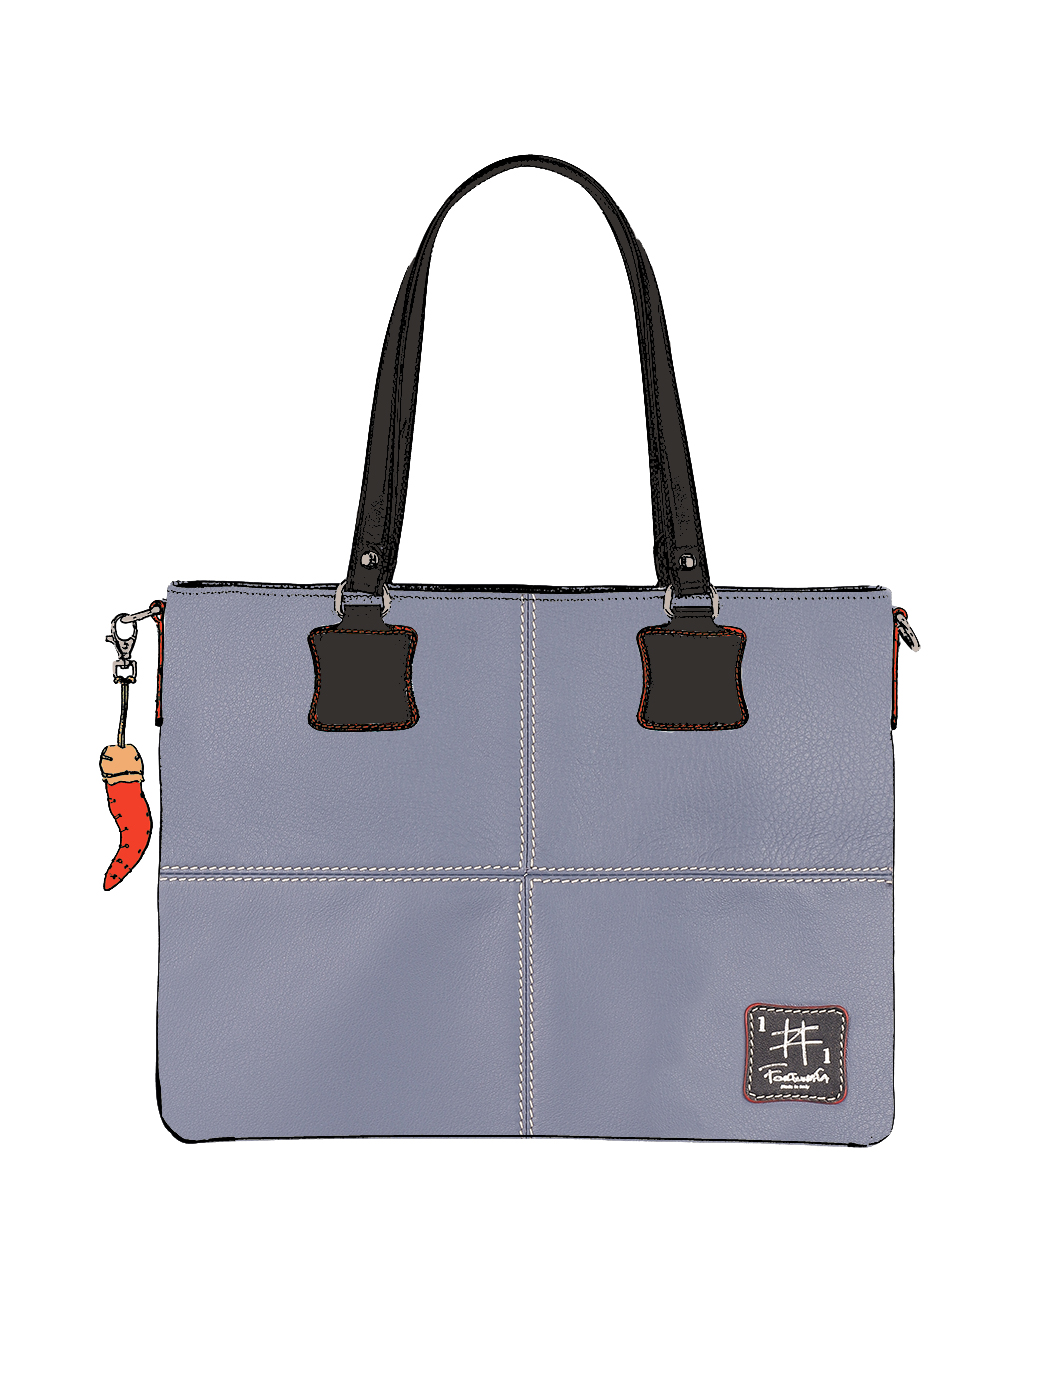 Дизайнерская сумка – шоппер из коллекции Fortunata серого цвета